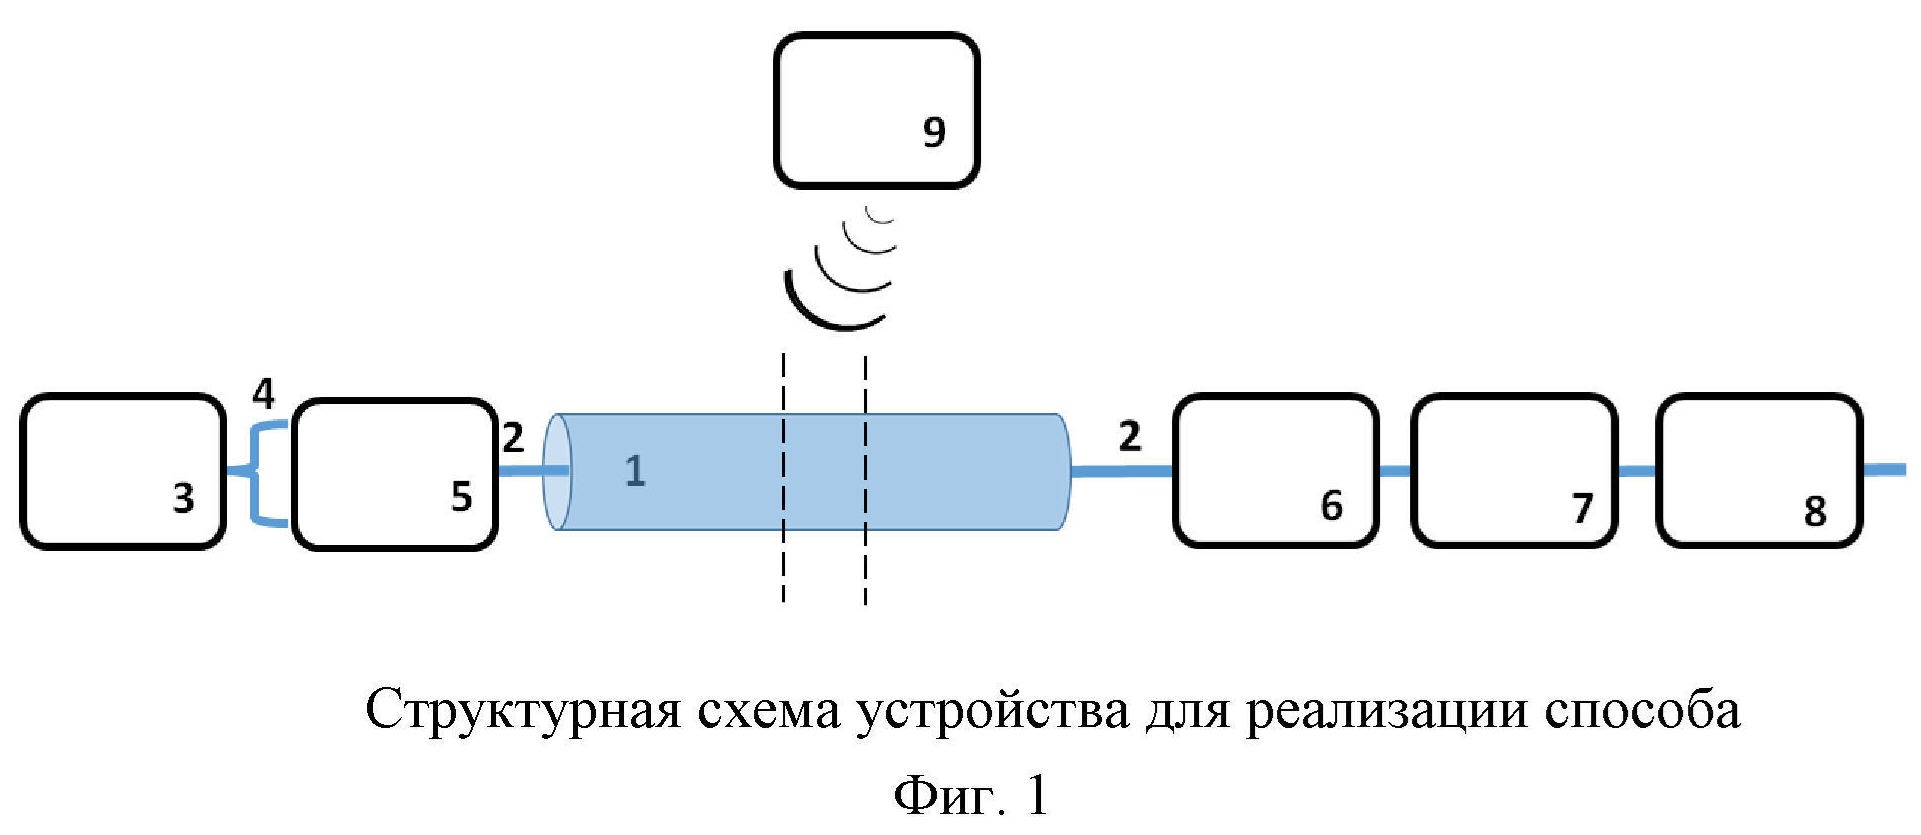 Способ симплексной передачи данных по оптическому волокну кабельной линии